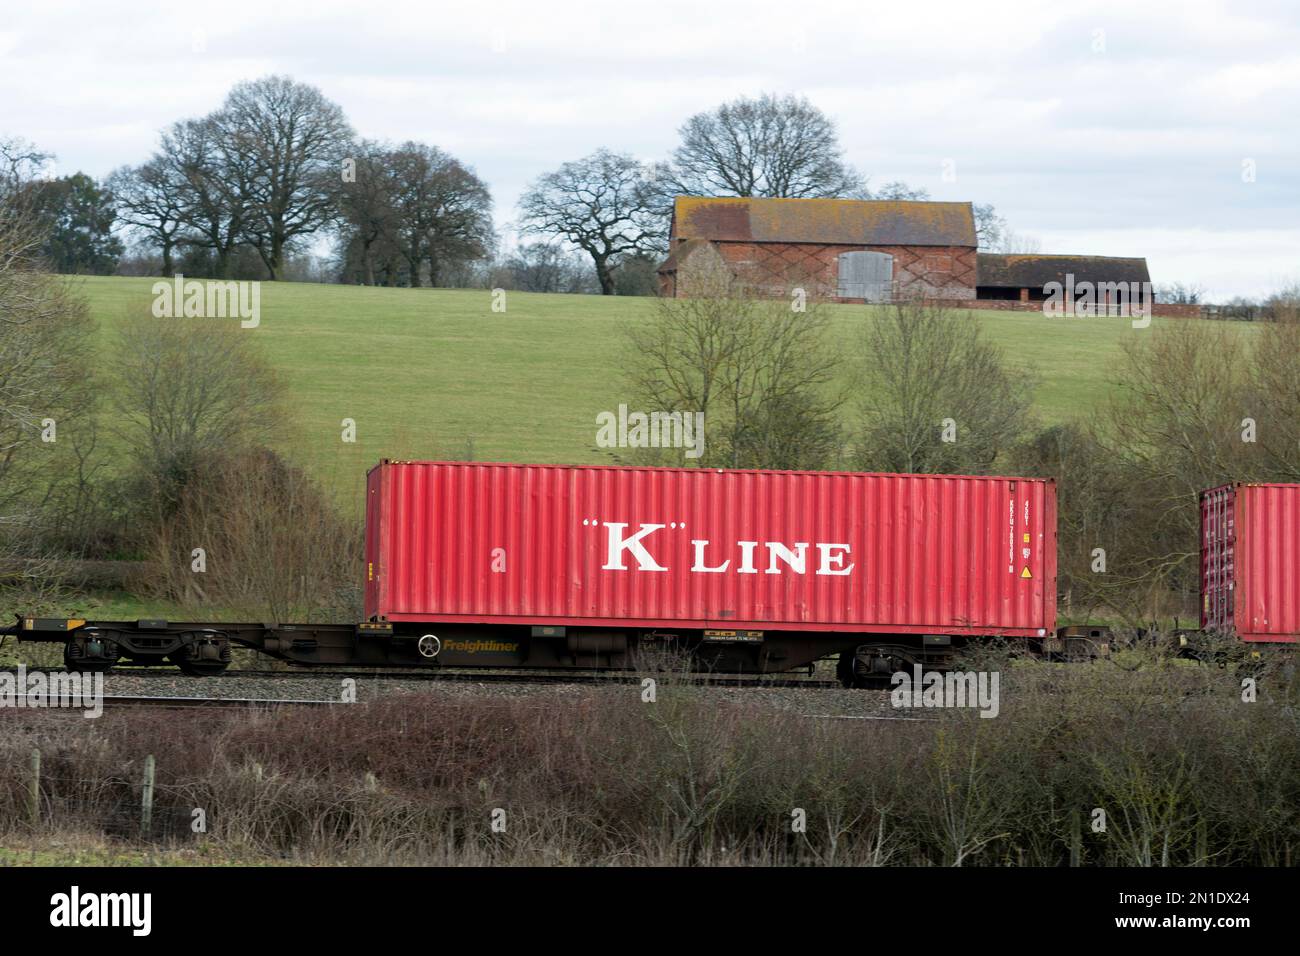 Conteneur d'expédition de la ligne K sur un train intermodal, Warwickshire, Royaume-Uni Banque D'Images